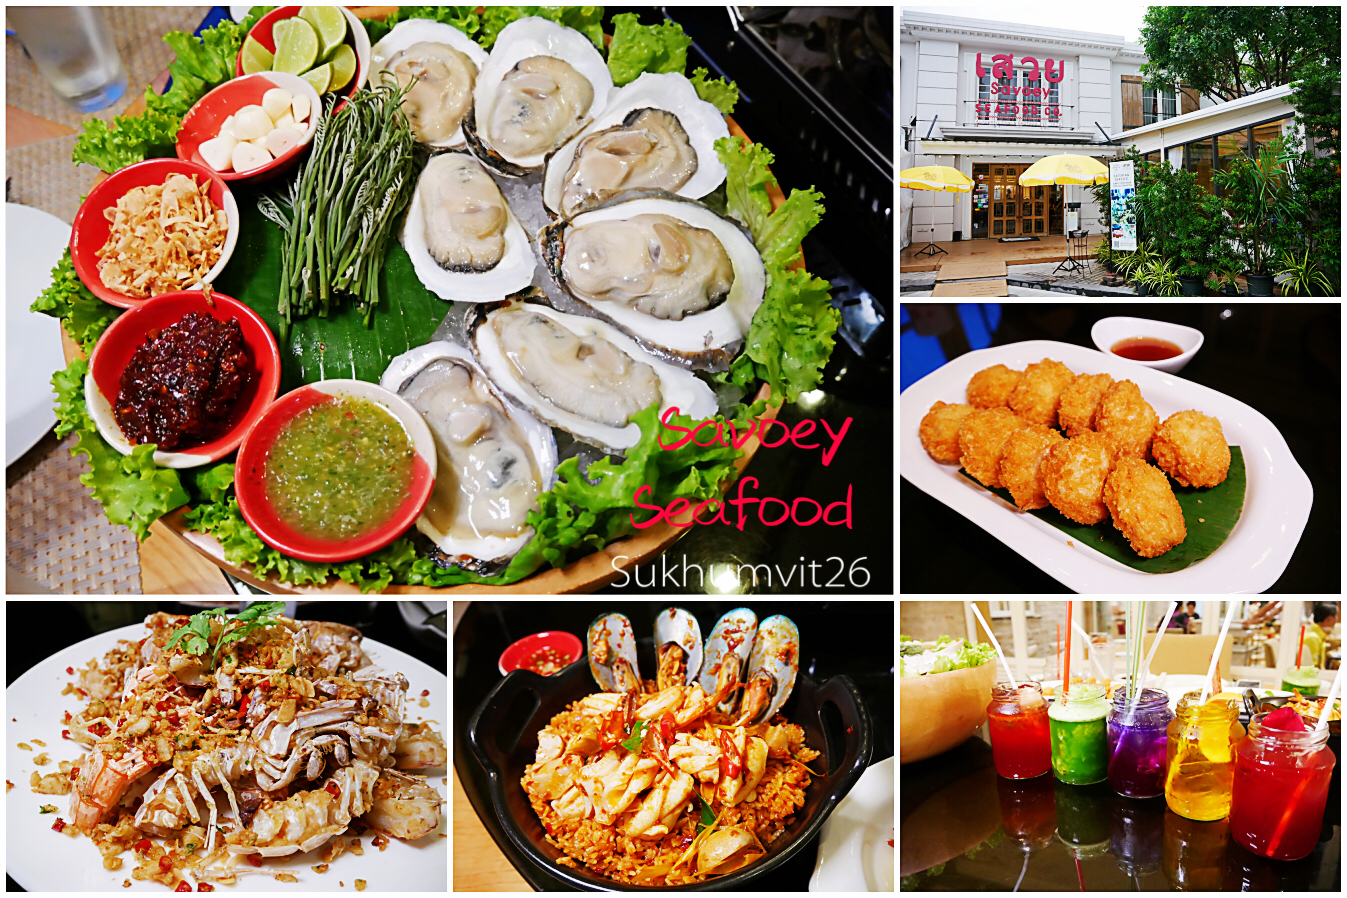 延伸閱讀：[曼谷美食]浪漫玻璃屋唯美造型的上味泰餐館Savoey Seafood CO. Sukhumvit26~活跳跳生猛海鮮看得到(內含9折券)